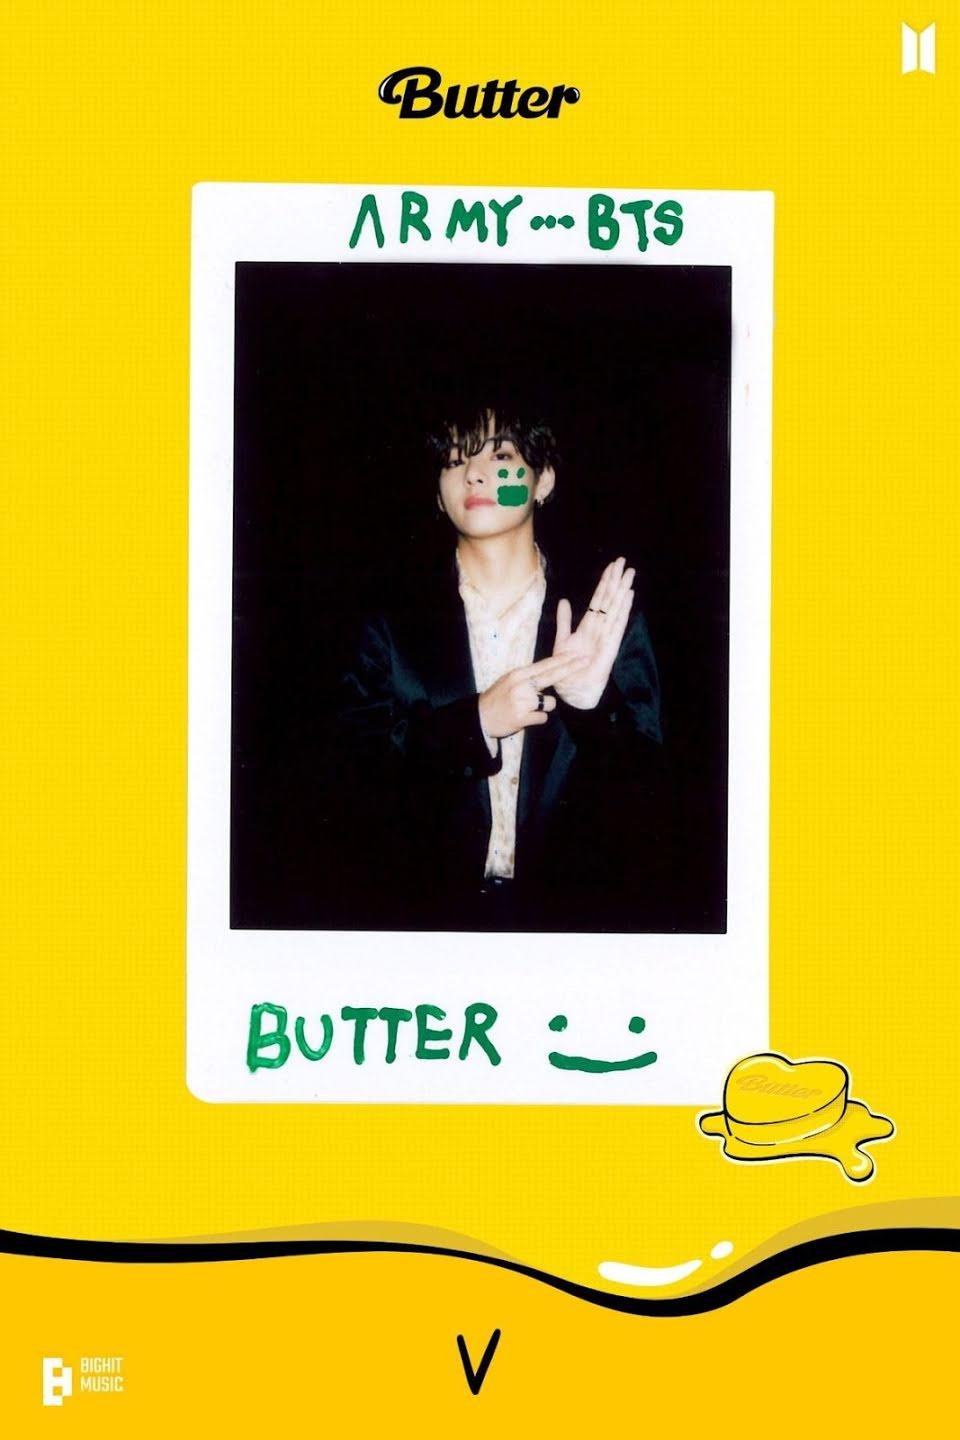 V sử dụng ngôn ngữ ký hiệu để diễn tả "Butter" (Ảnh: Internet)